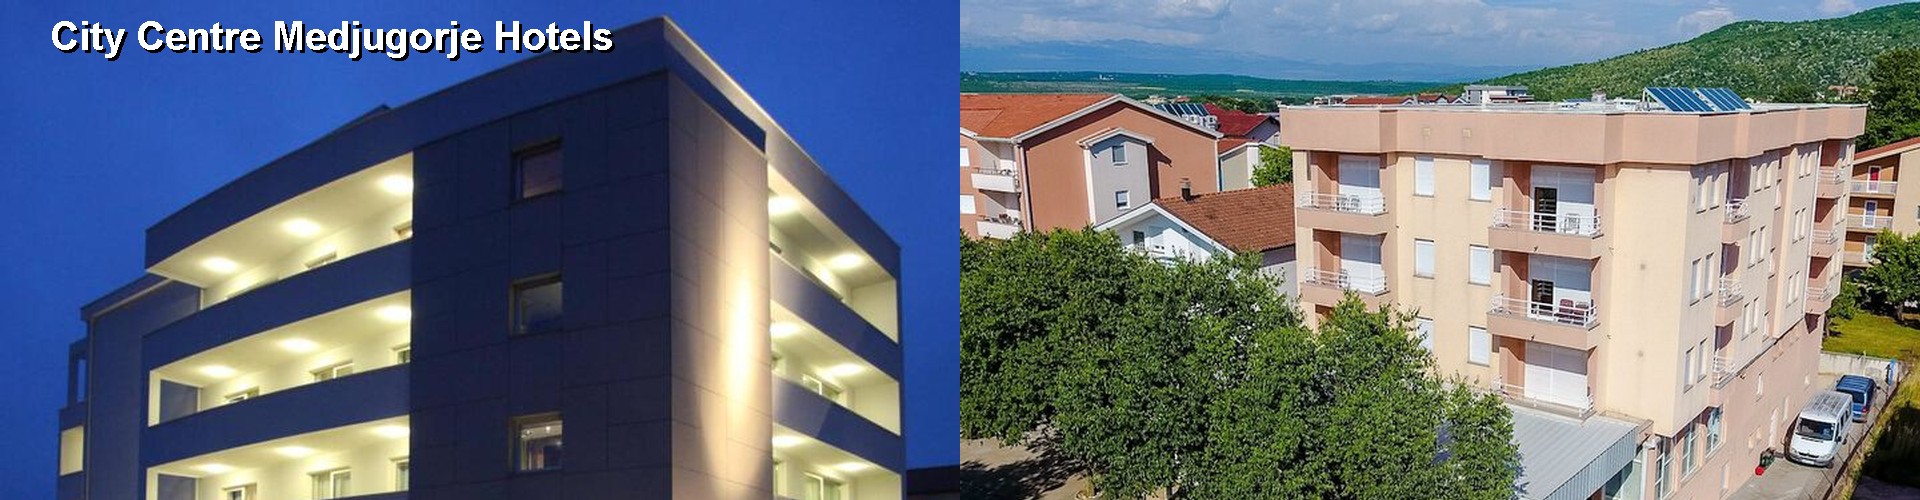 5 Best Hotels near City Centre Medjugorje